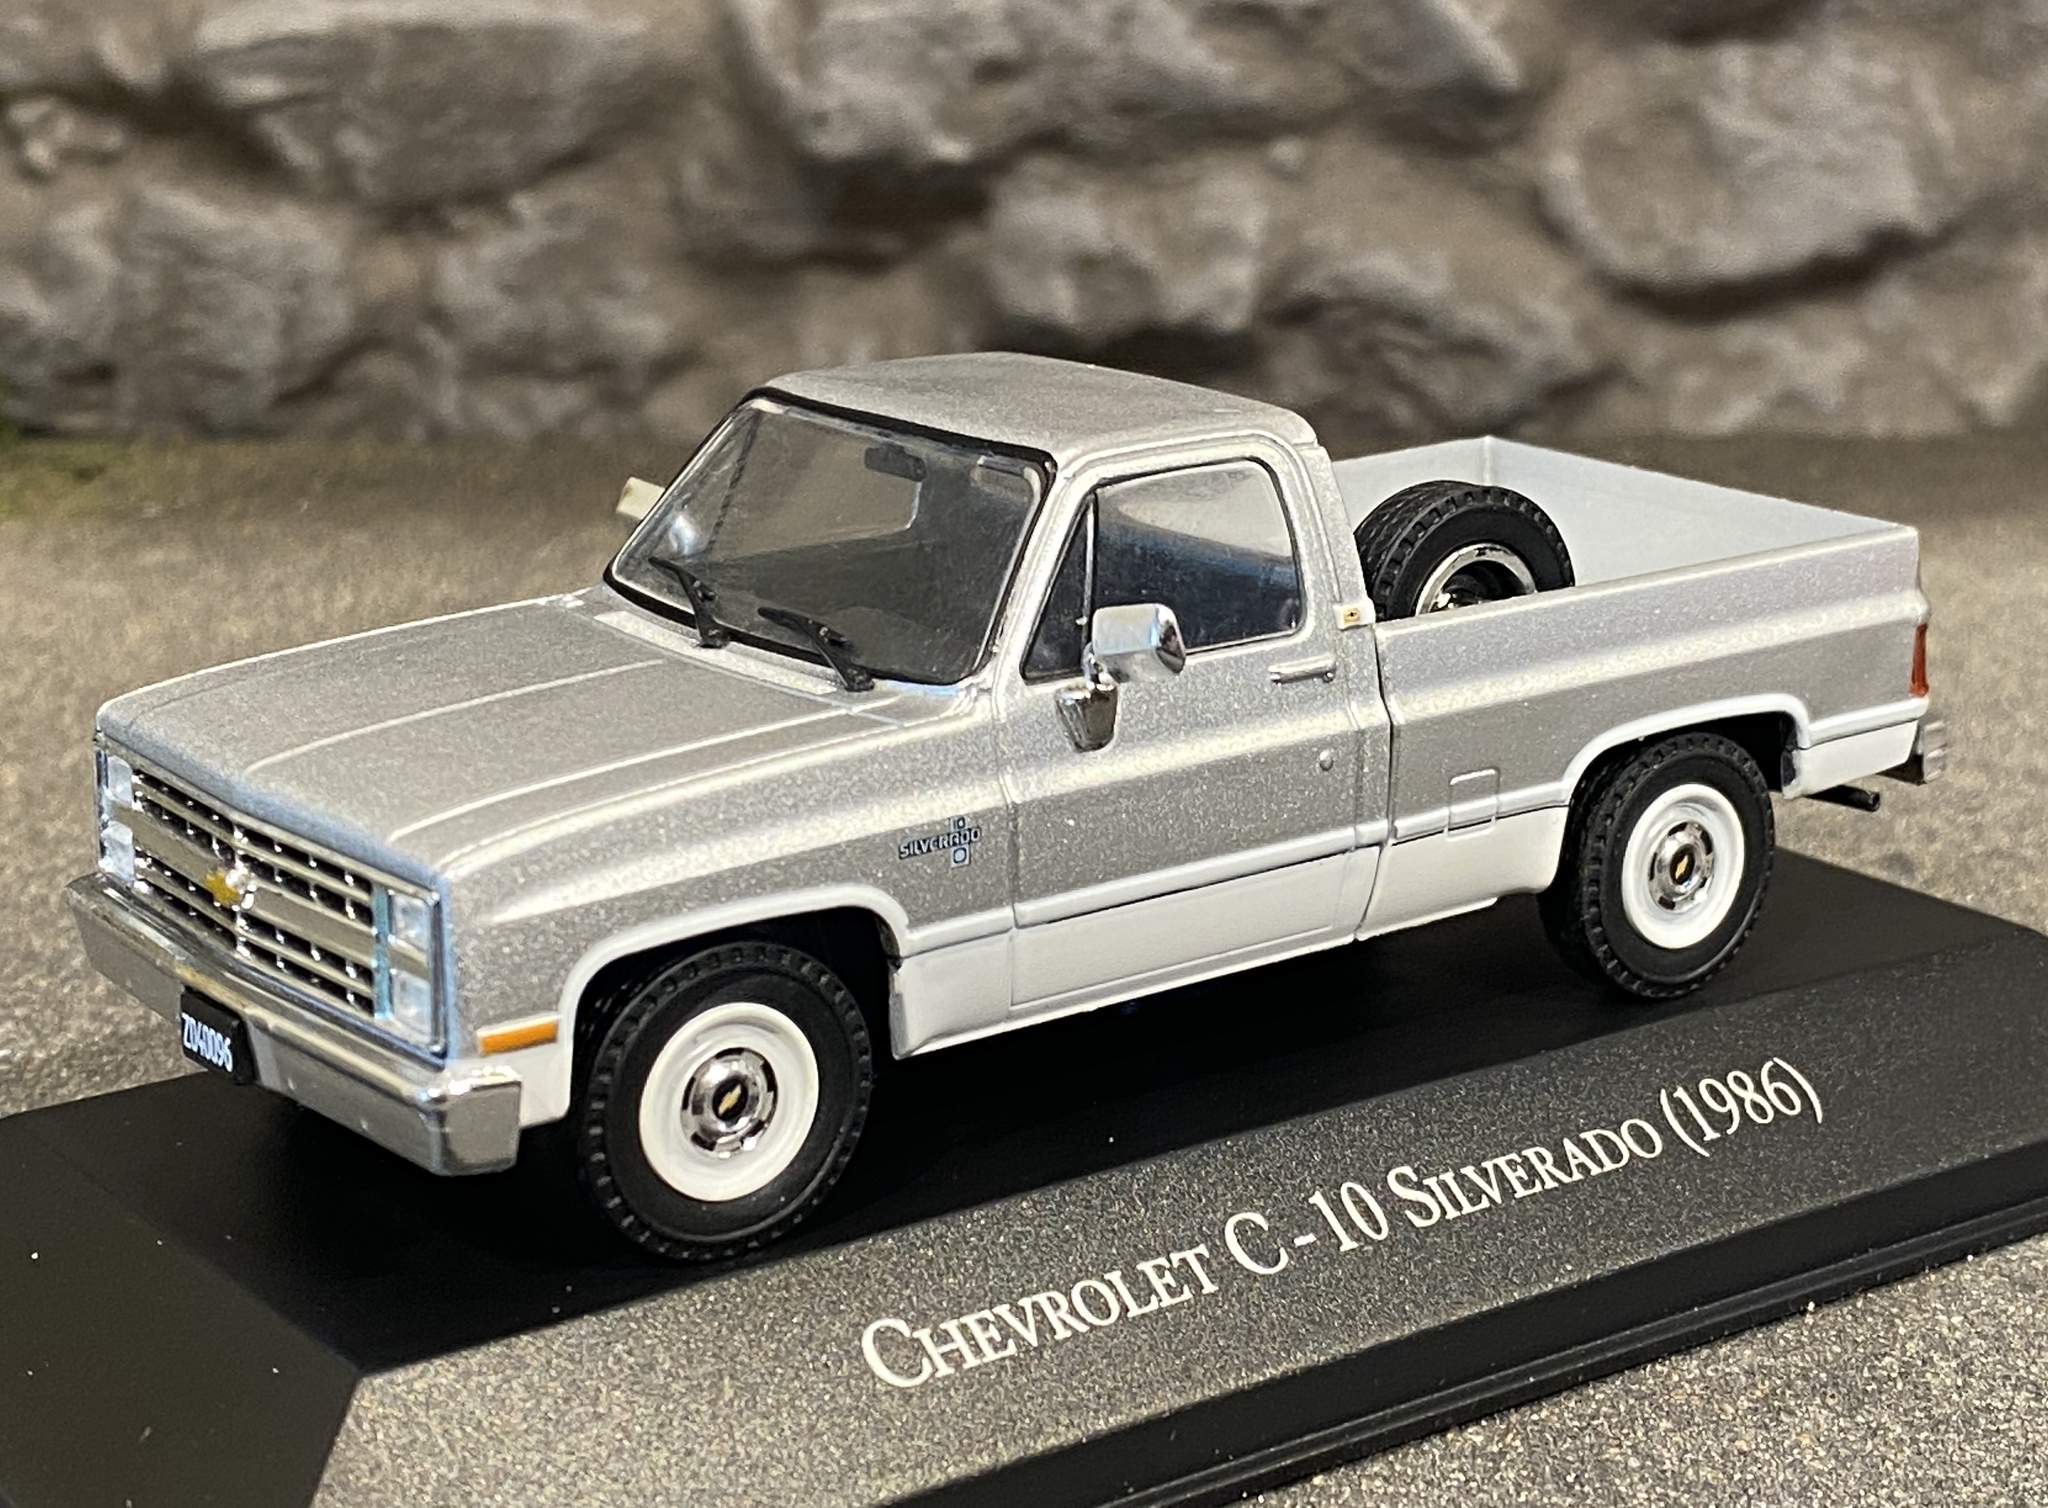 Skala 1/43: Chevrolet C-10 Silverado 1986 fr Salvat